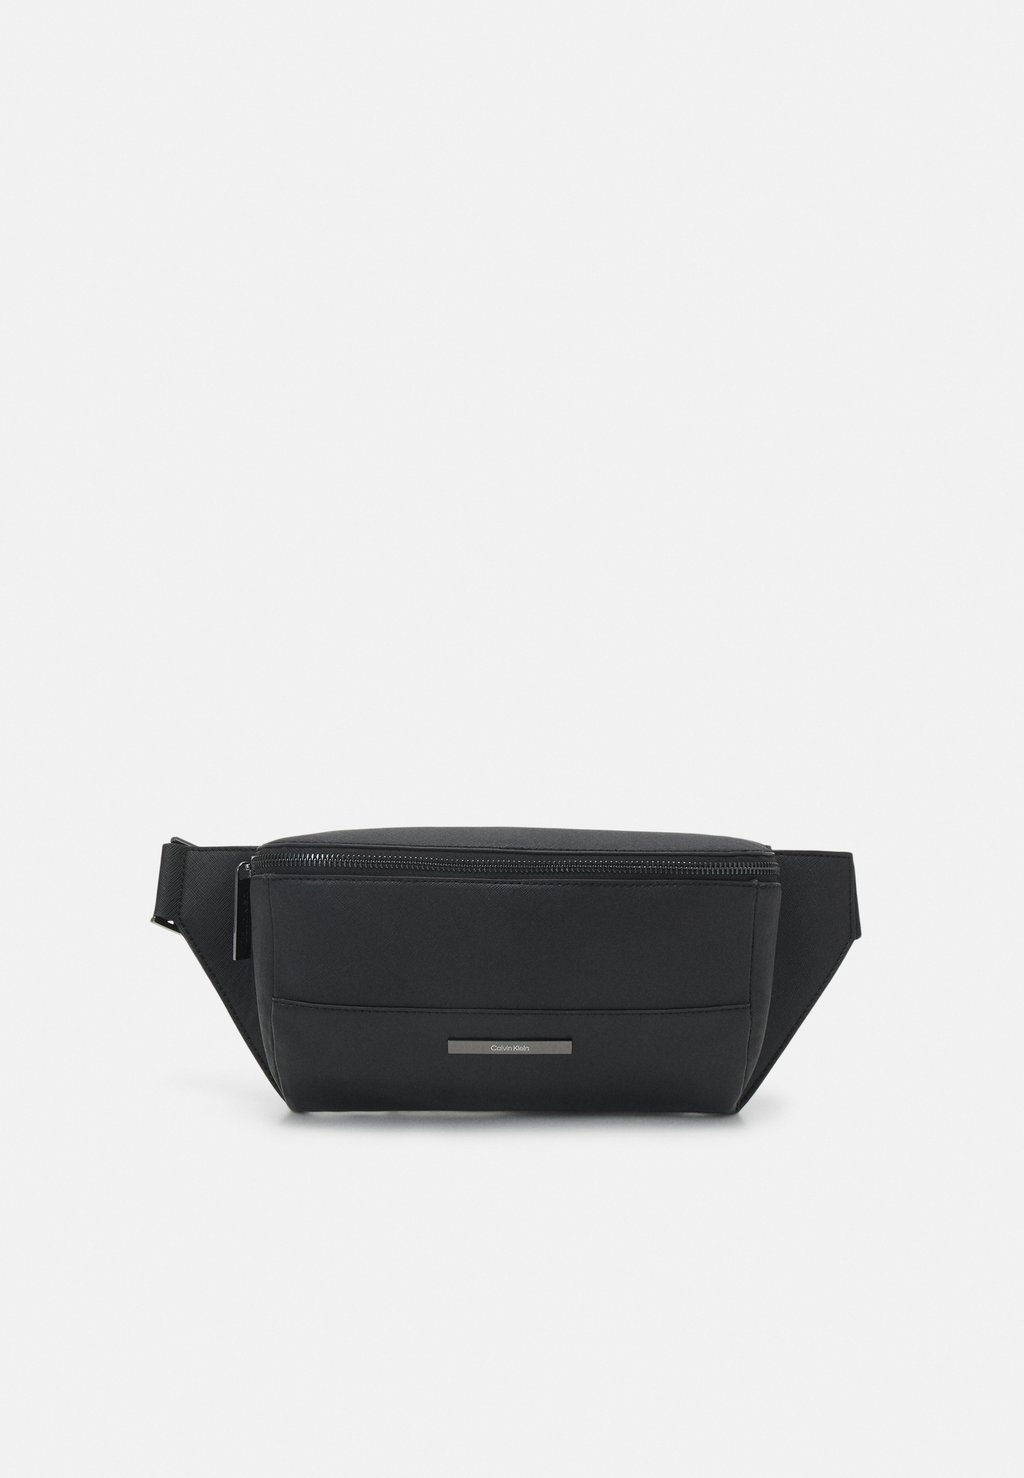 Поясная сумка Modern Bar Waistbag Unisex Calvin Klein, цвет black saffiano